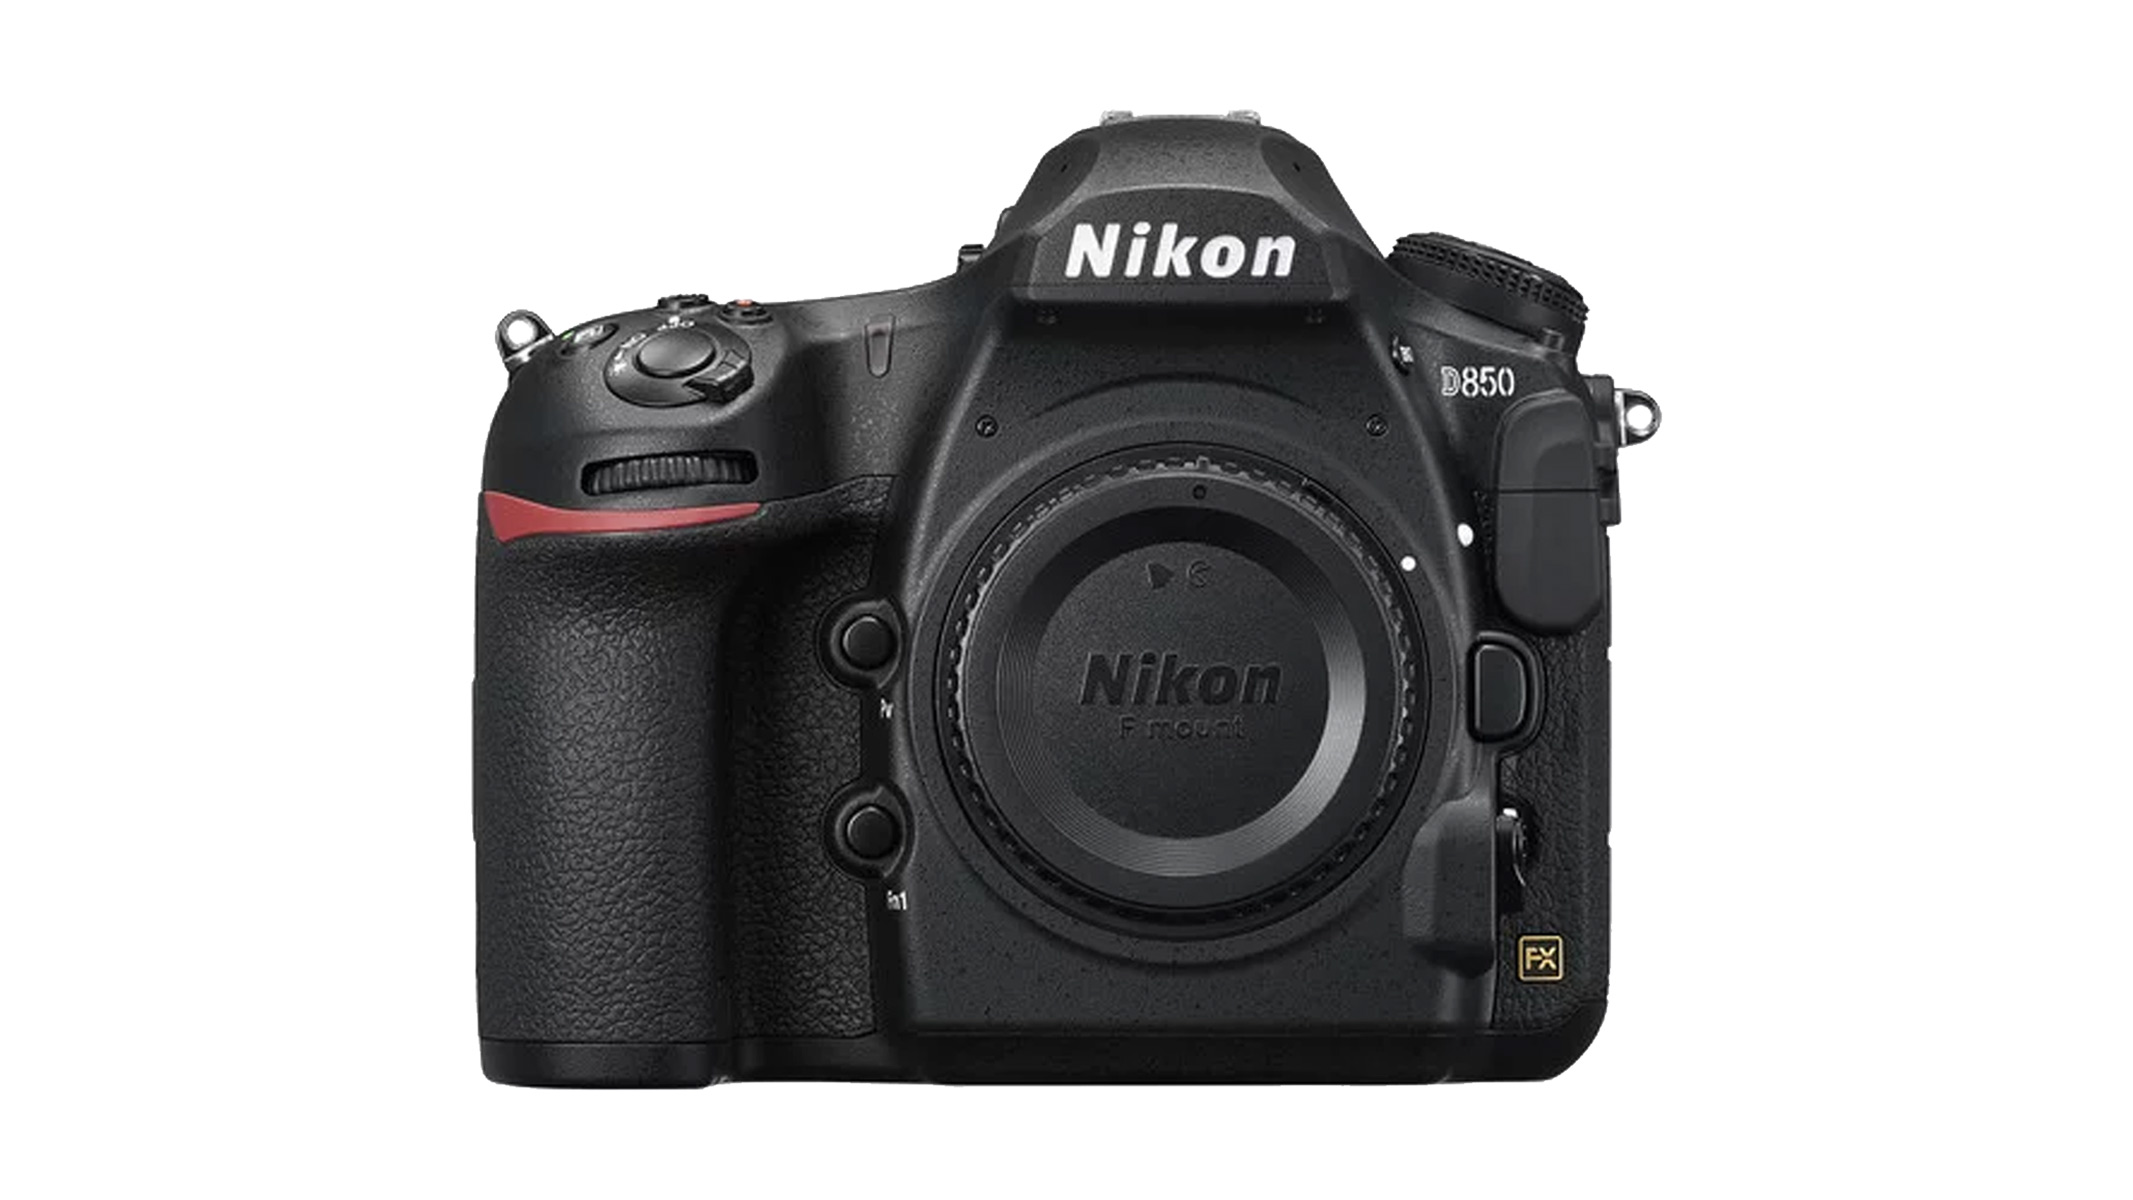 Nikon D850 photo album on a white background